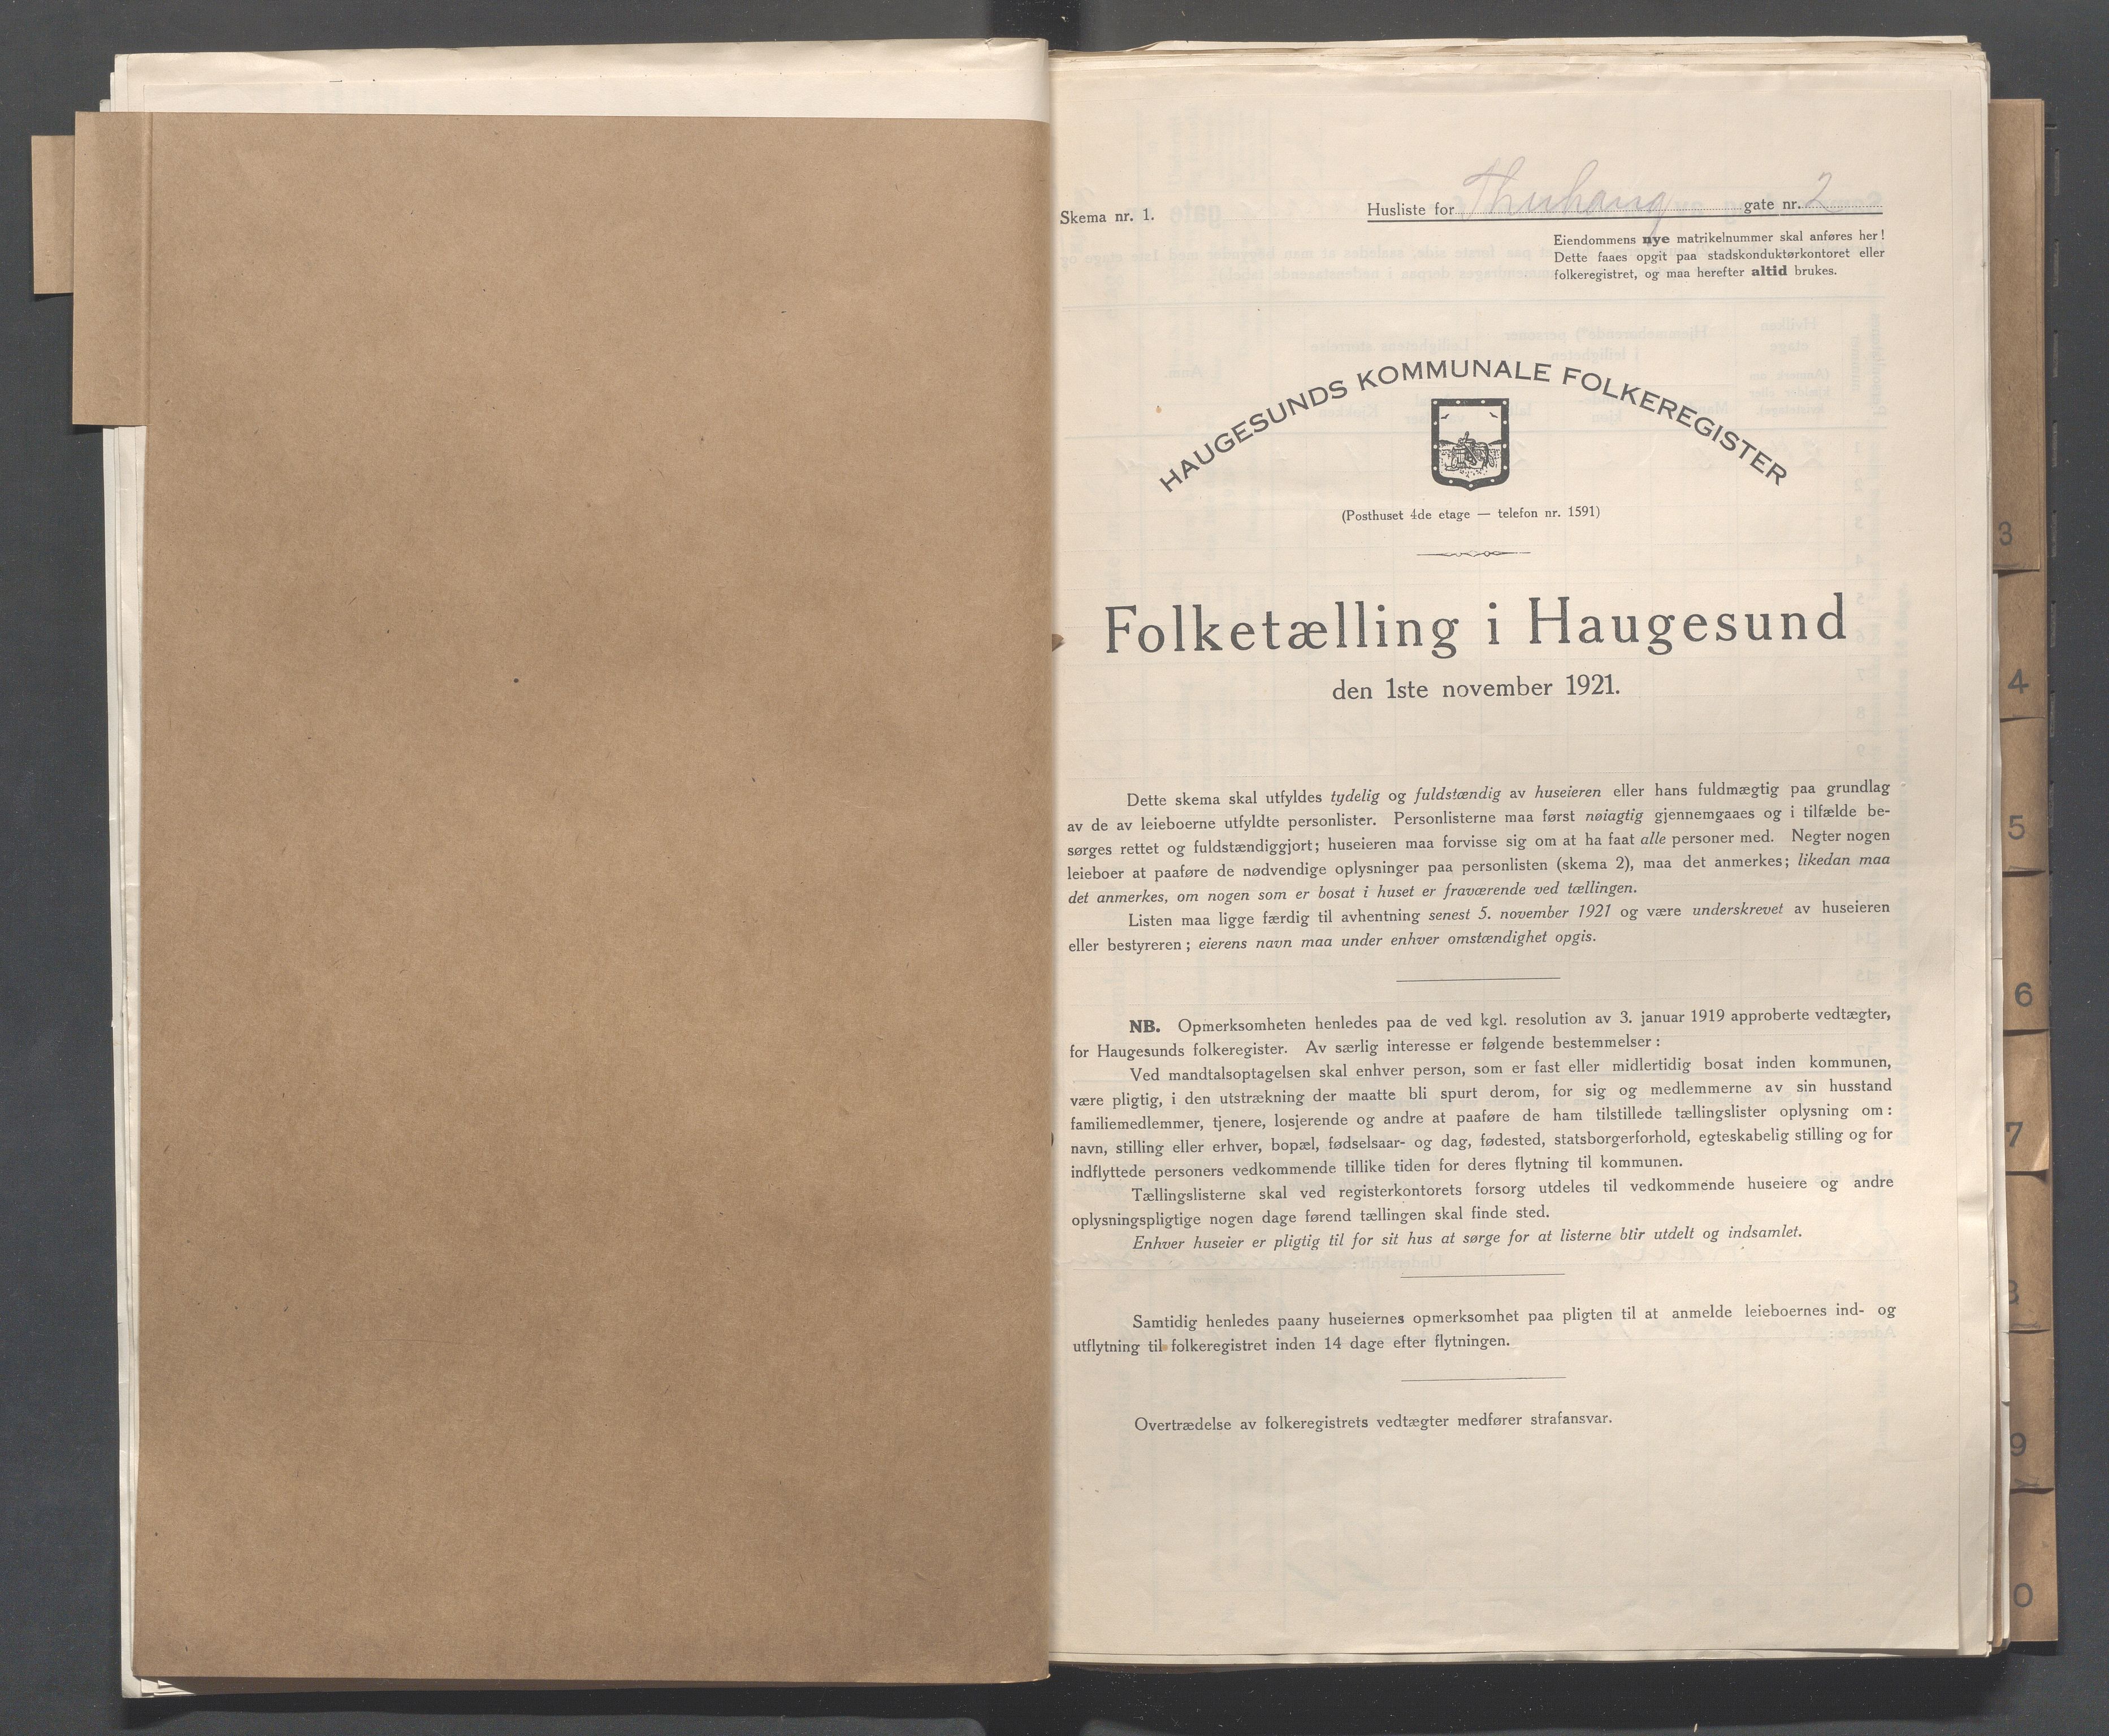 IKAR, Local census 1.11.1921 for Haugesund, 1921, p. 5398